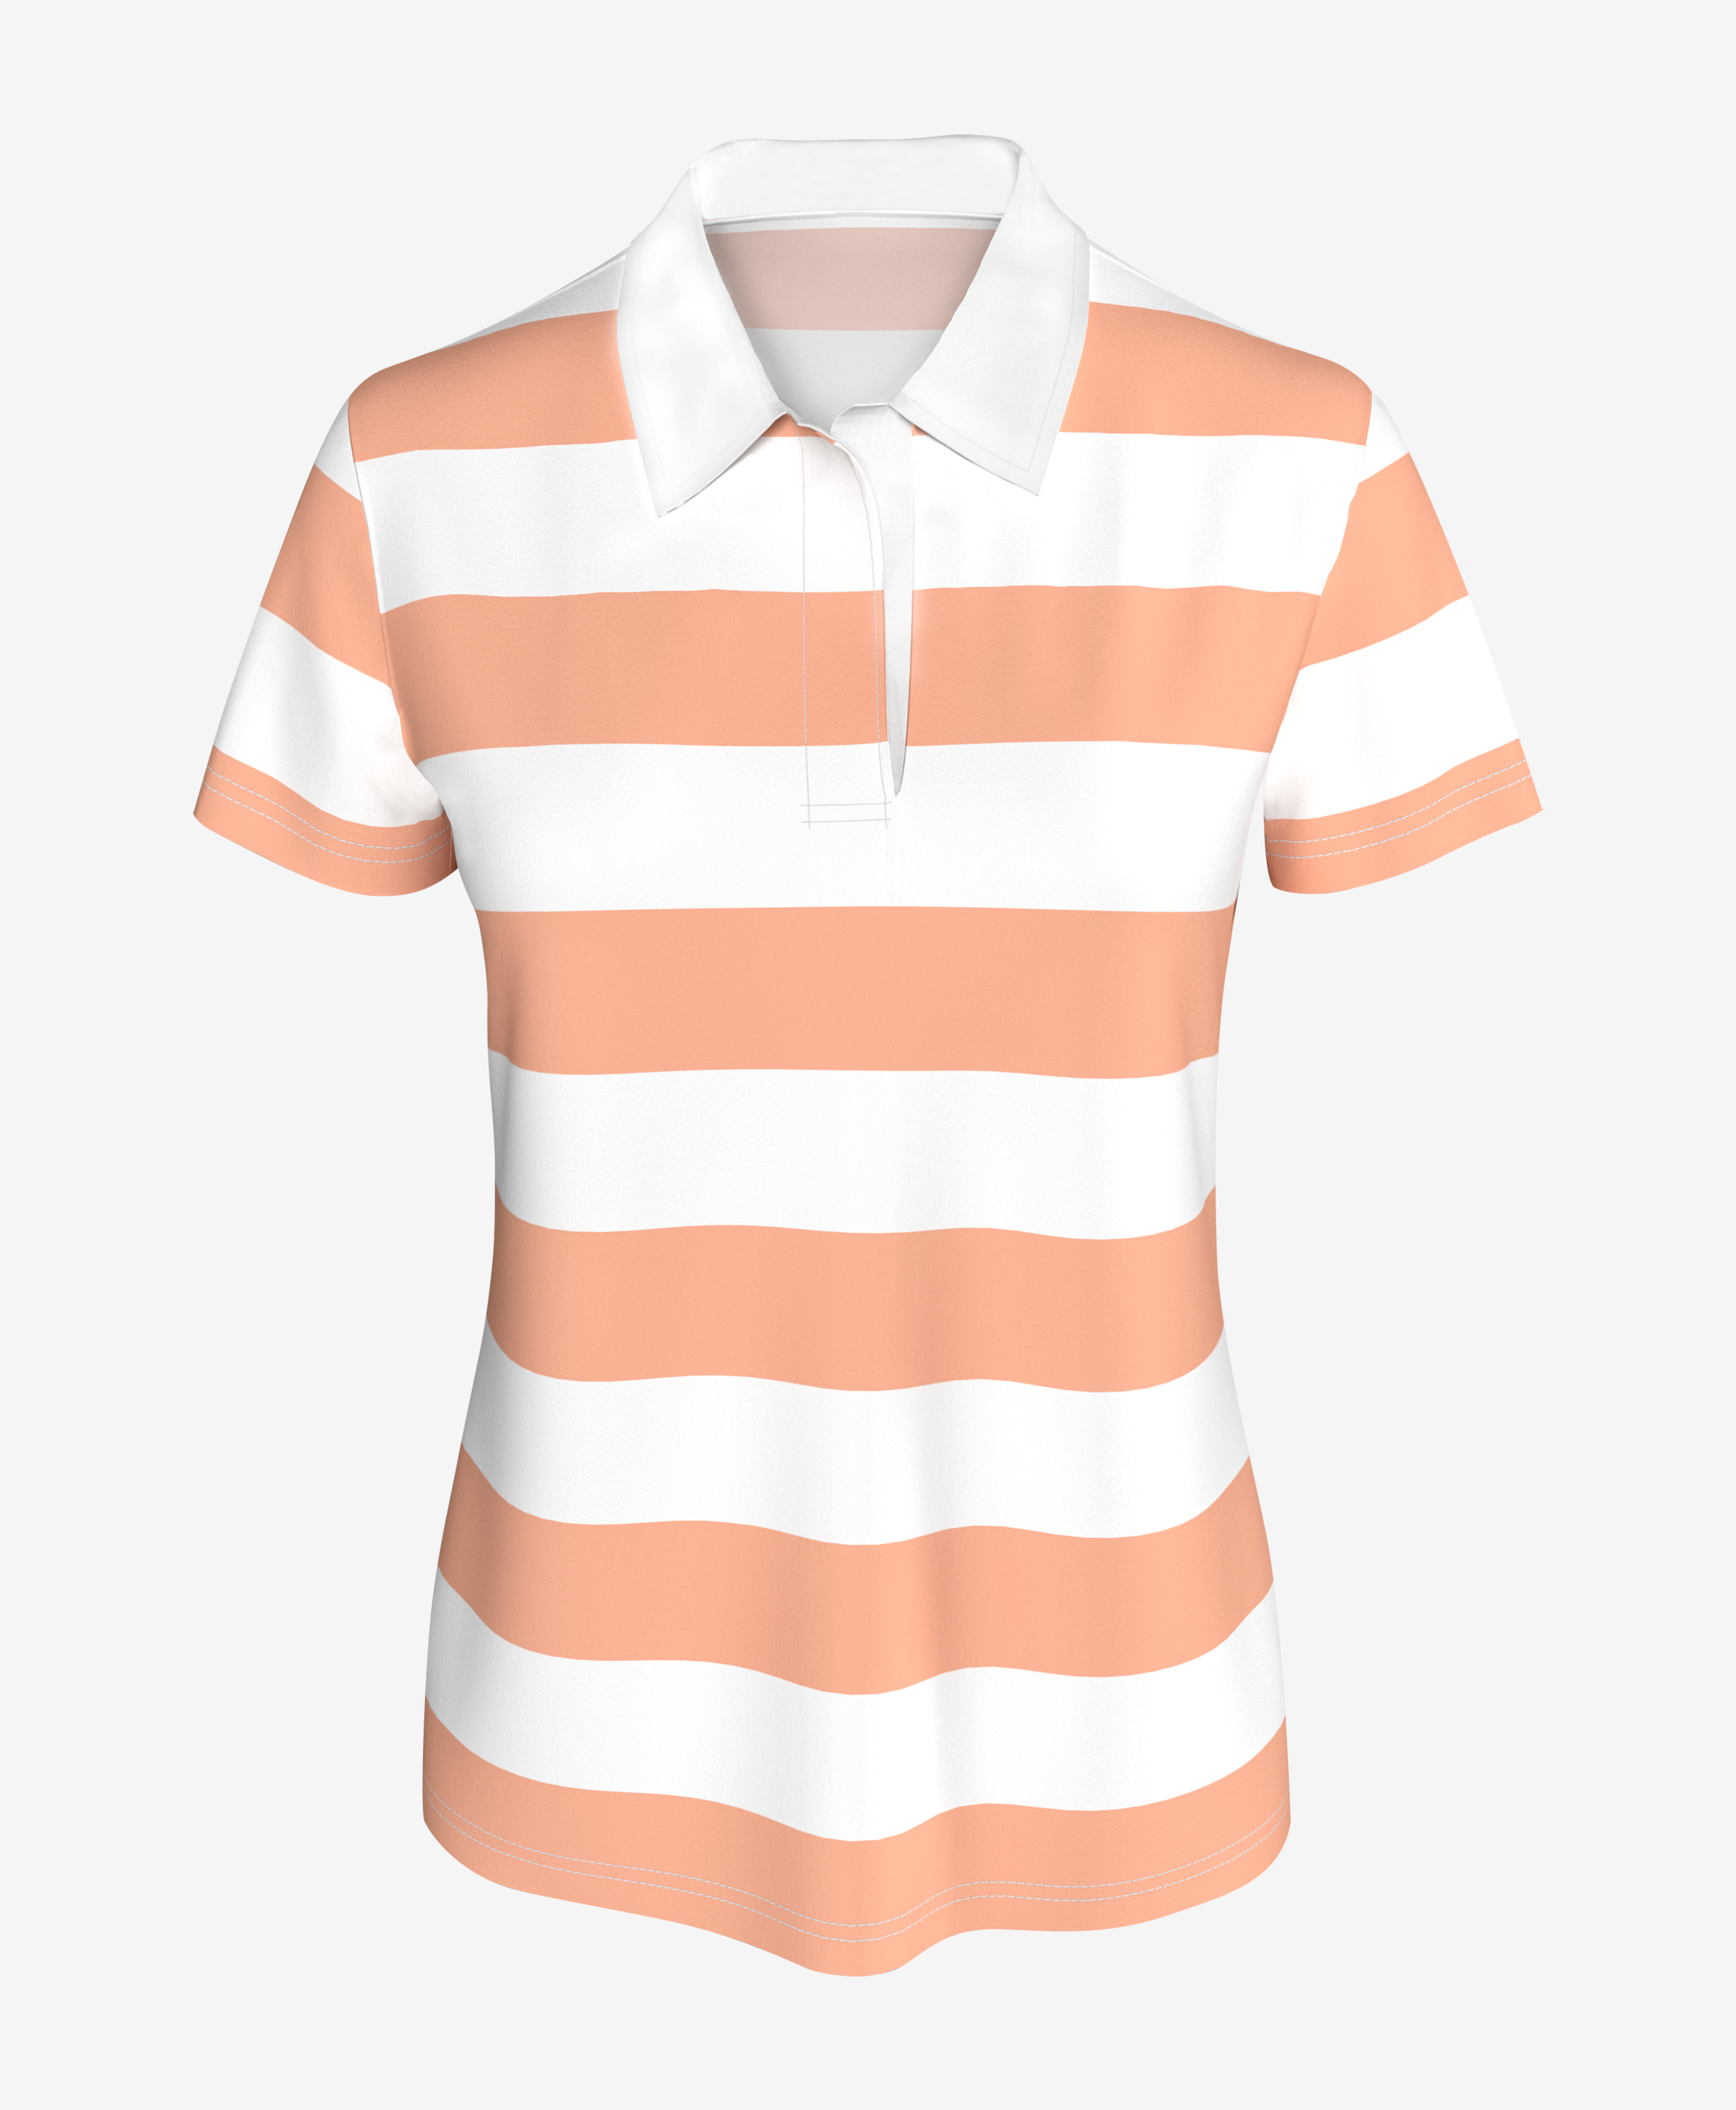 Damska koszulka typu polo w paski, kolor biały, łososiowy, S-XXL